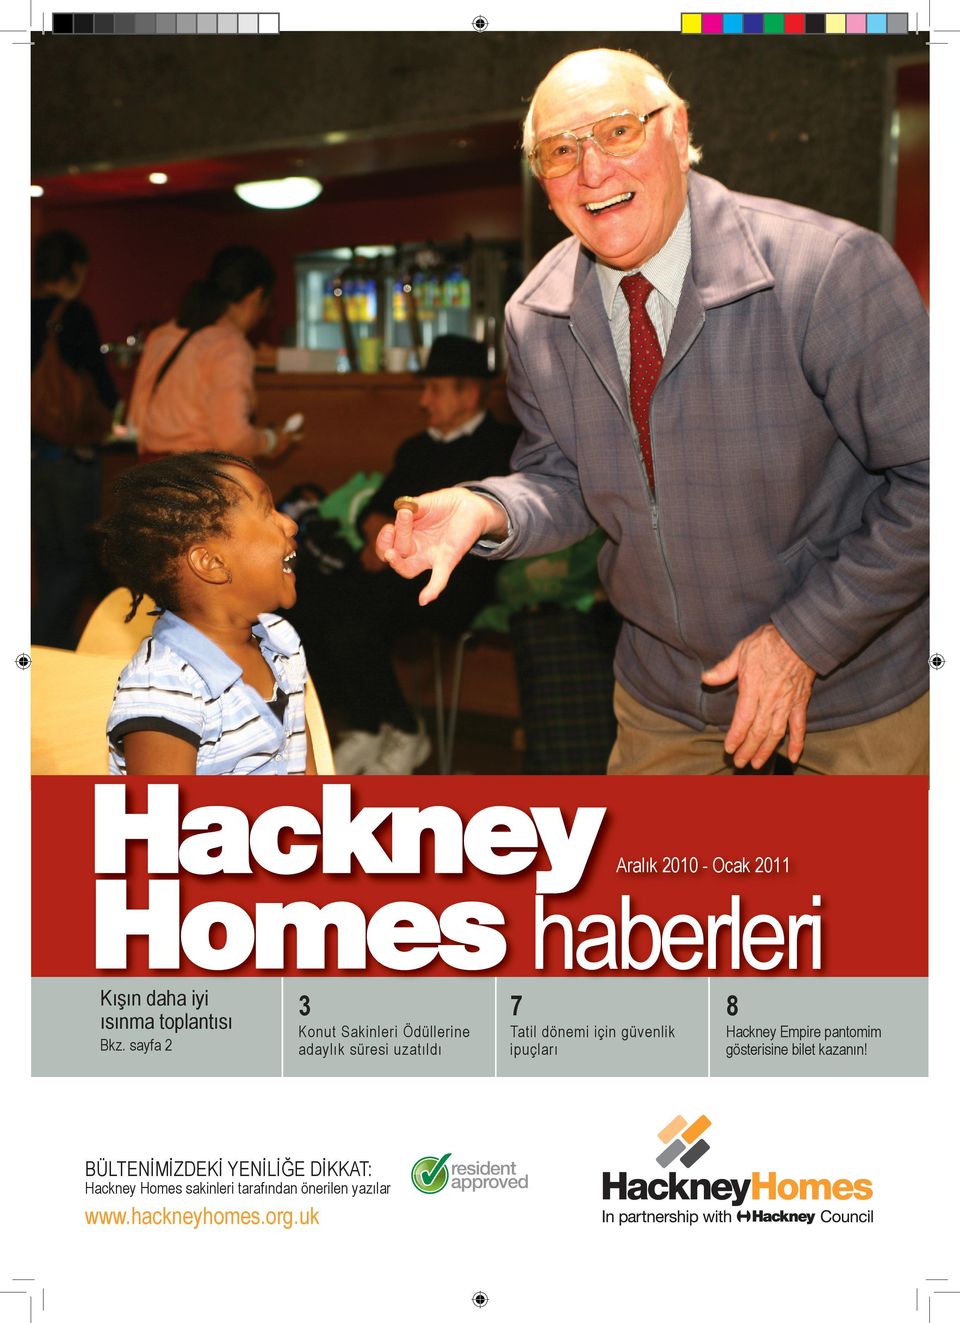 dönemi için güvenlik ipuçlarý BÜLTENÝMÝZDEKÝ YENÝLÝÐE DÝKKAT: Hackney Homes